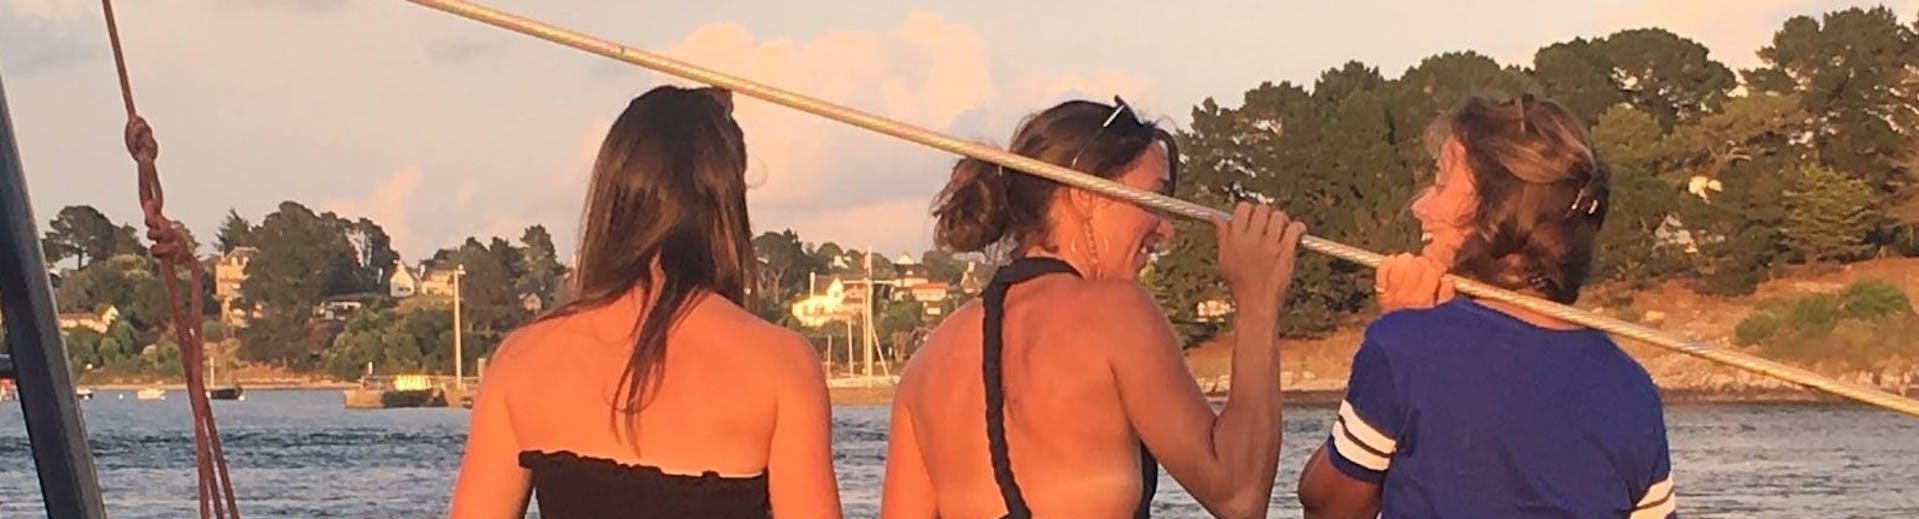 Alcune ragazze si godono una gita in catamarano al tramonto nel Golfo di Morbihan con il Maxi Catamarano Caseneuve.